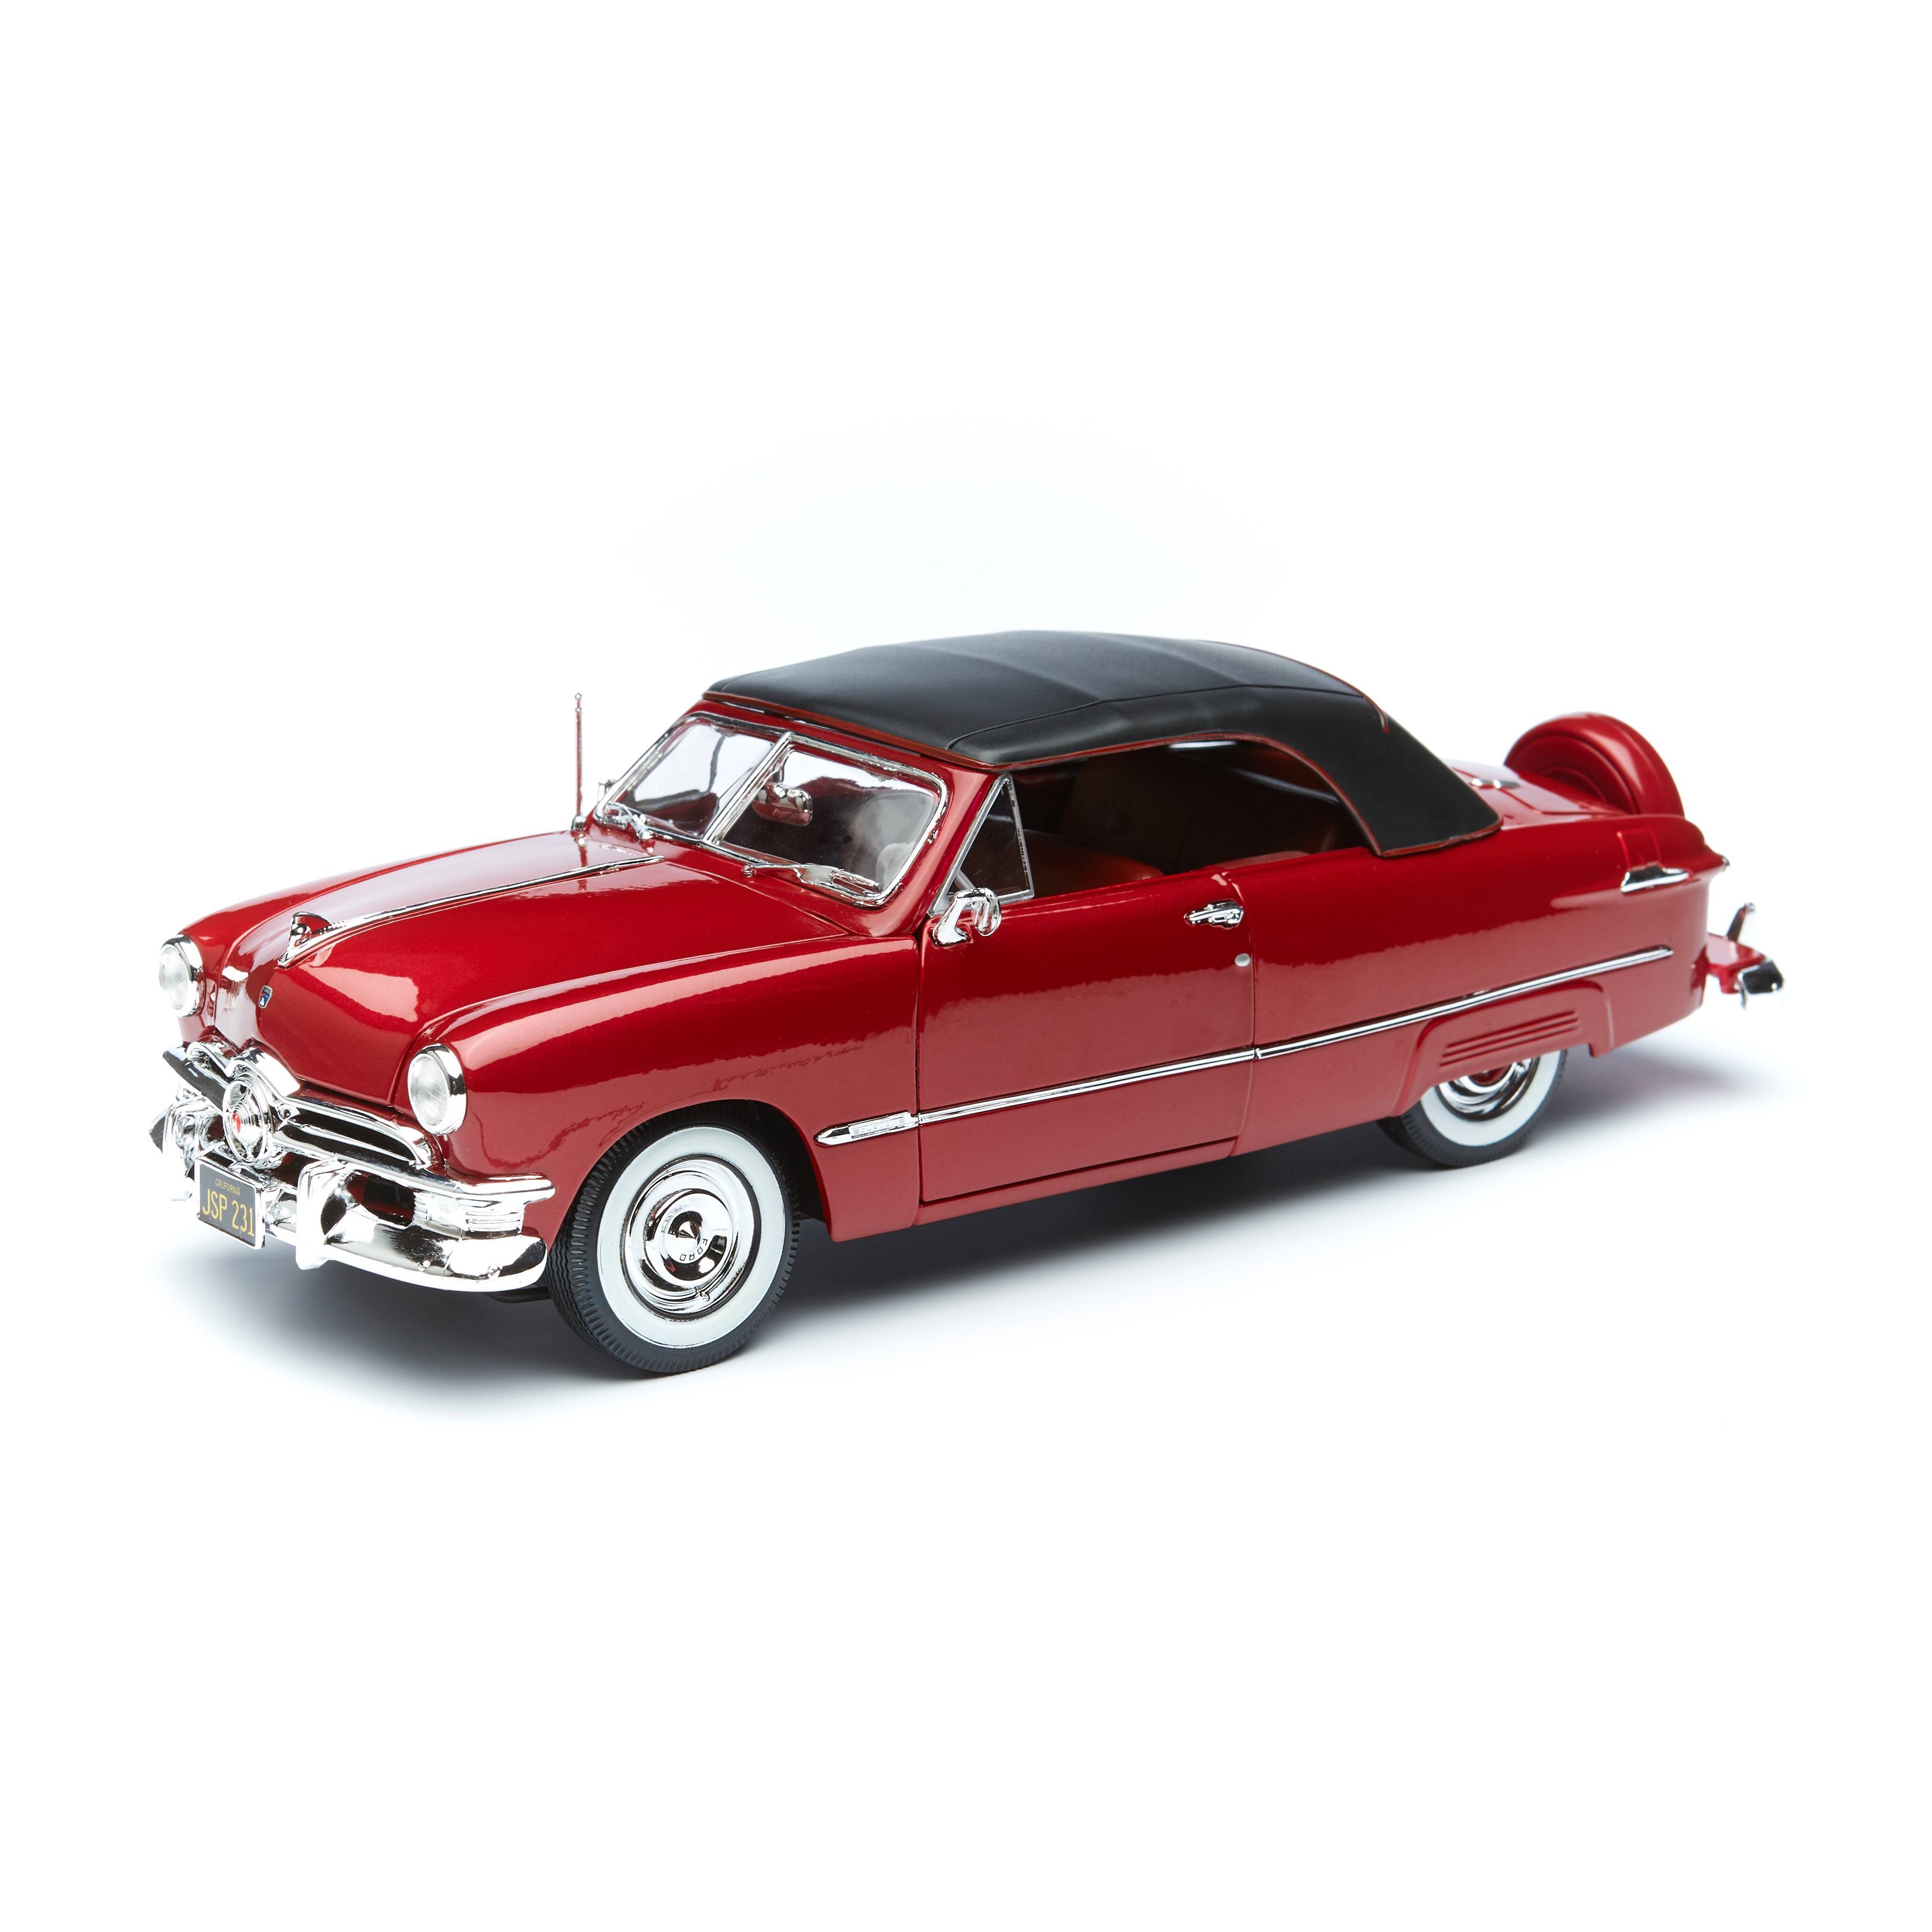 Машинка Maisto Ford 1950 красный 1:18 машинка maisto металлическая 1 18 ford bronco badlands 21 желтая 31457 1